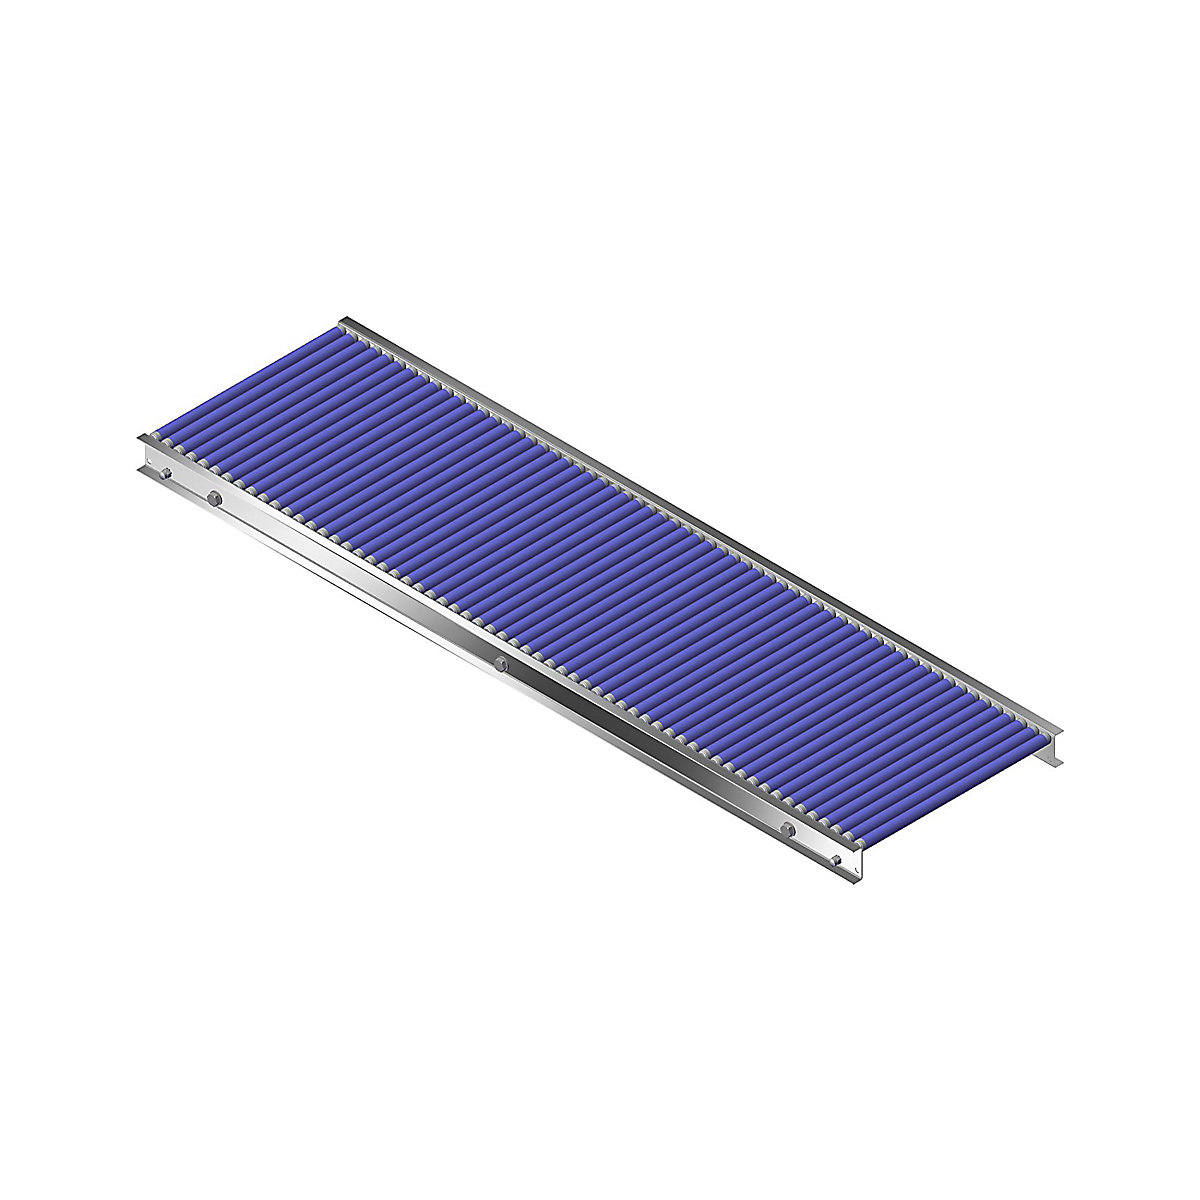 Gura – Malá valčeková dráha, hliníkový rám s plastovými valčekmi, šírka dráhy 400 mm, vzdialenosť osí 25 mm, dĺžka 1,5 m